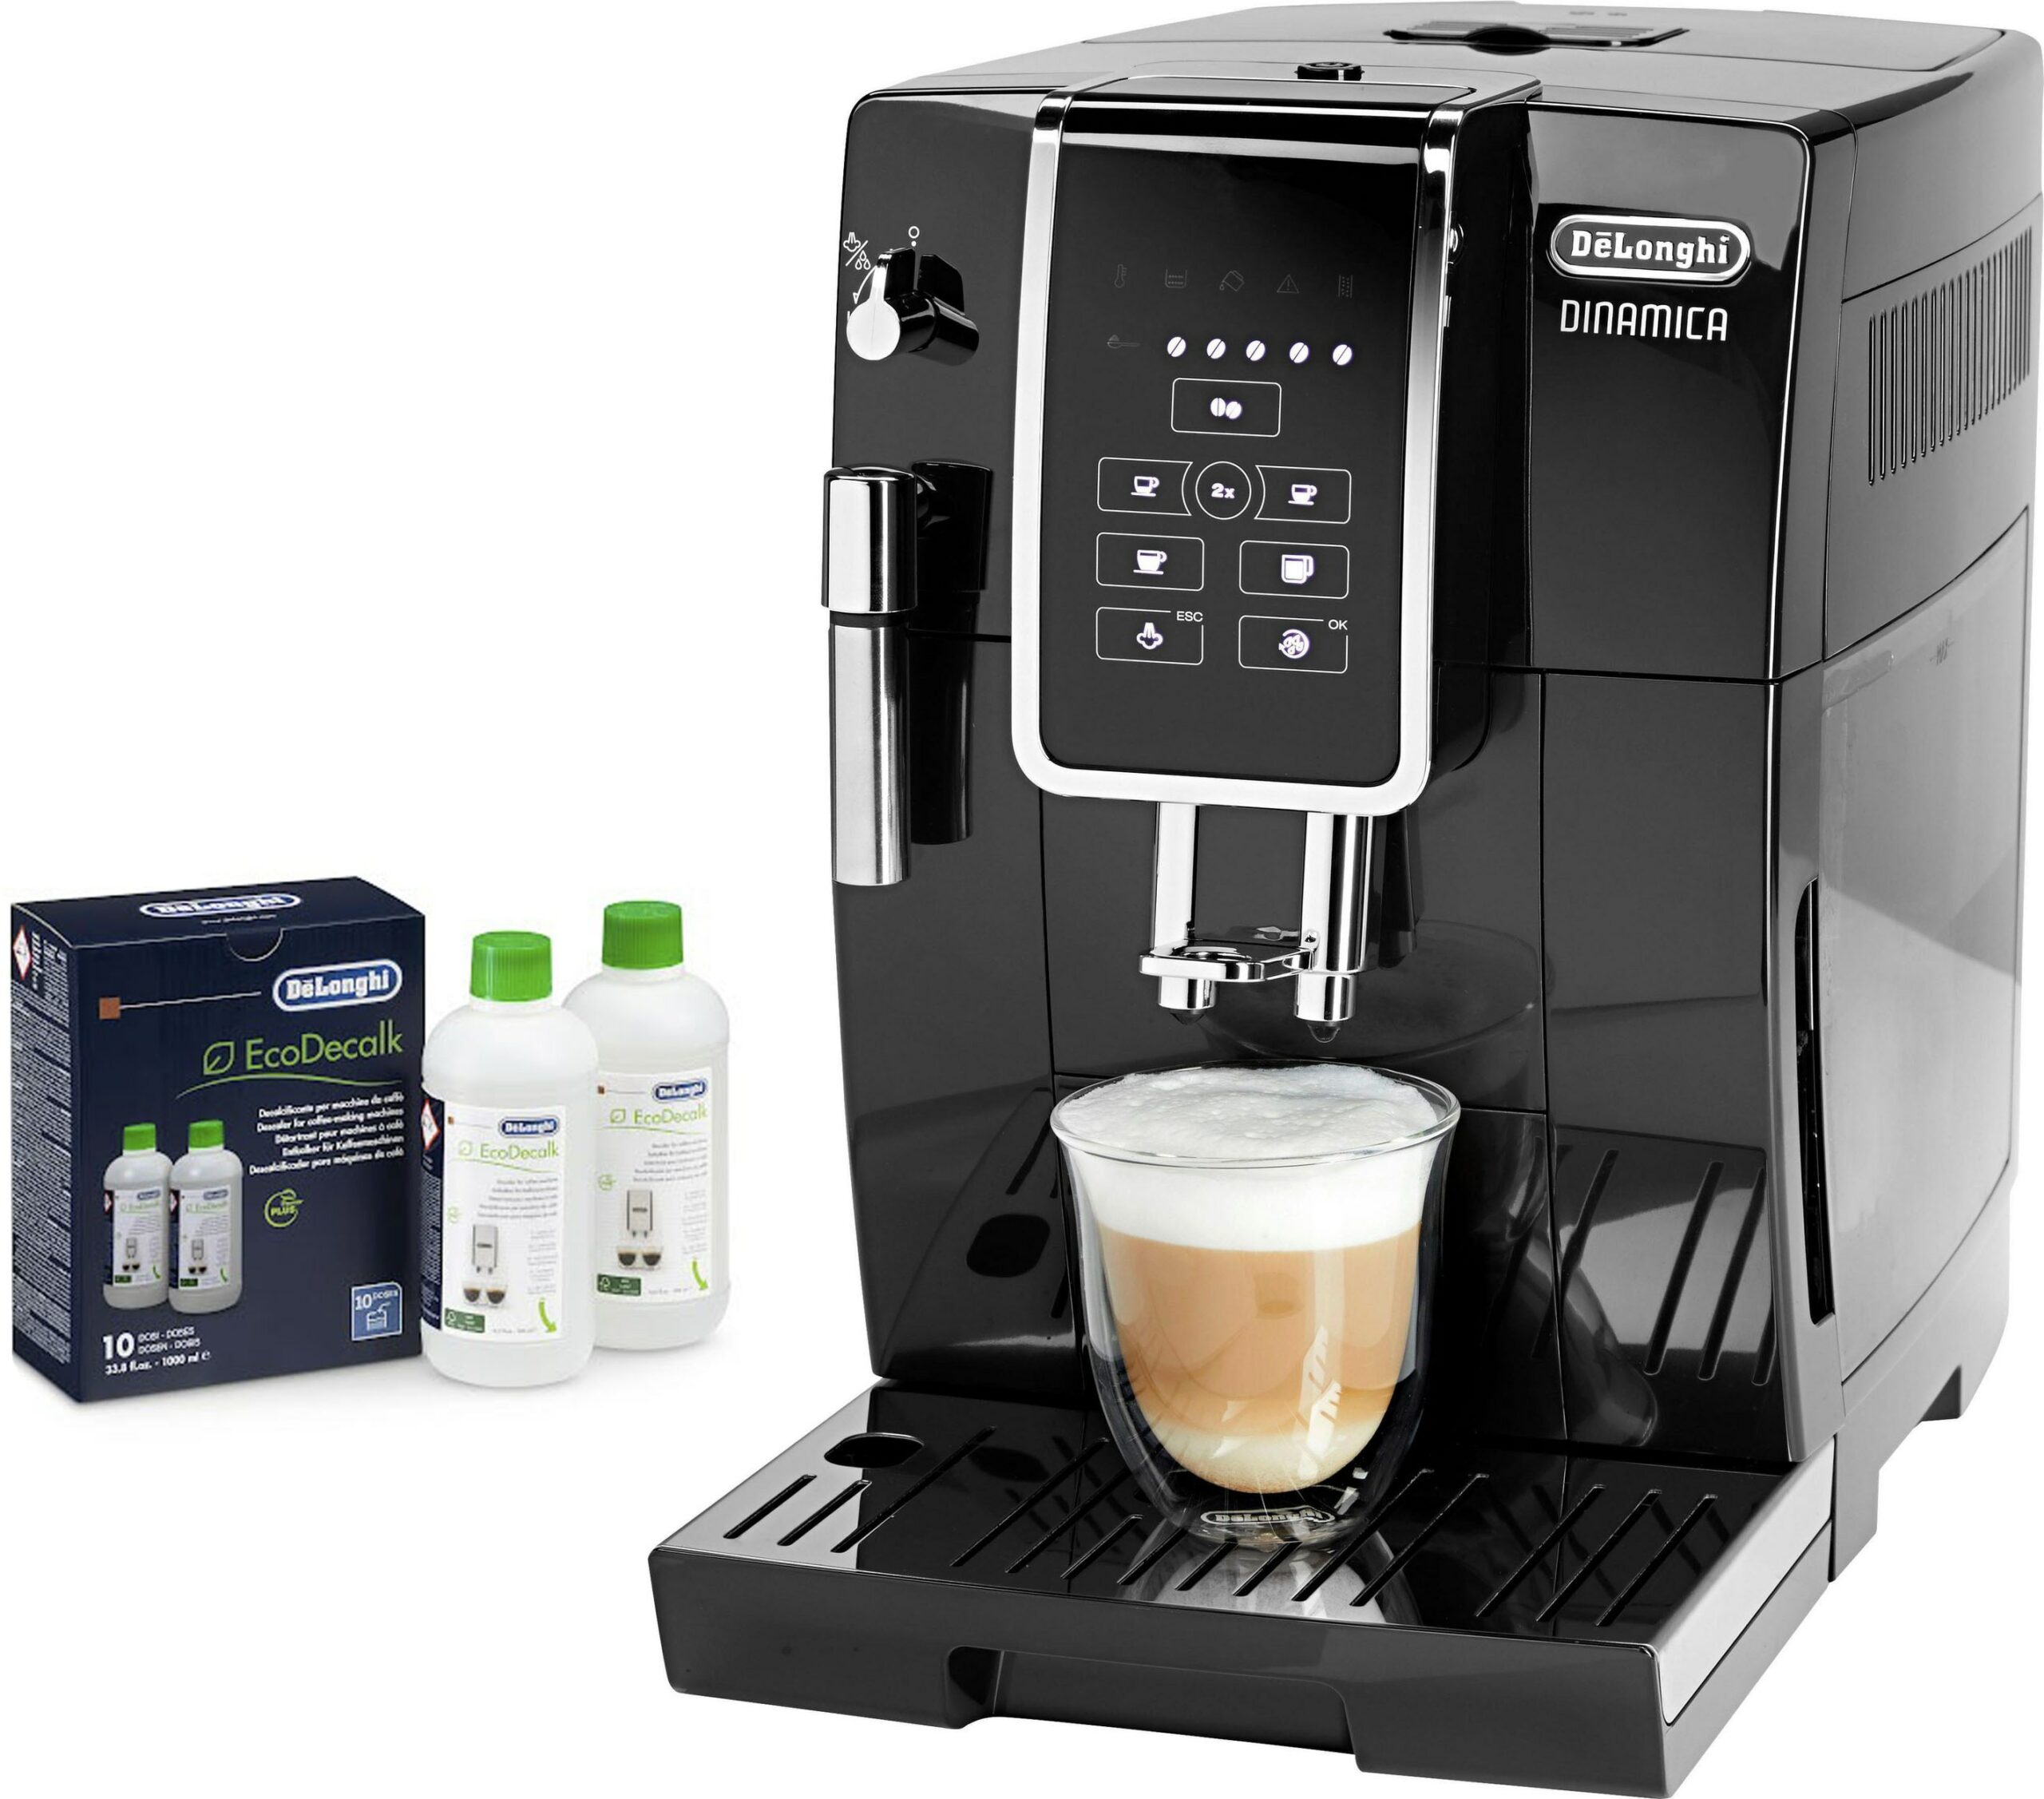 Dinamica ist die neue Kaffeevollautomaten-Serie von DeLonghi